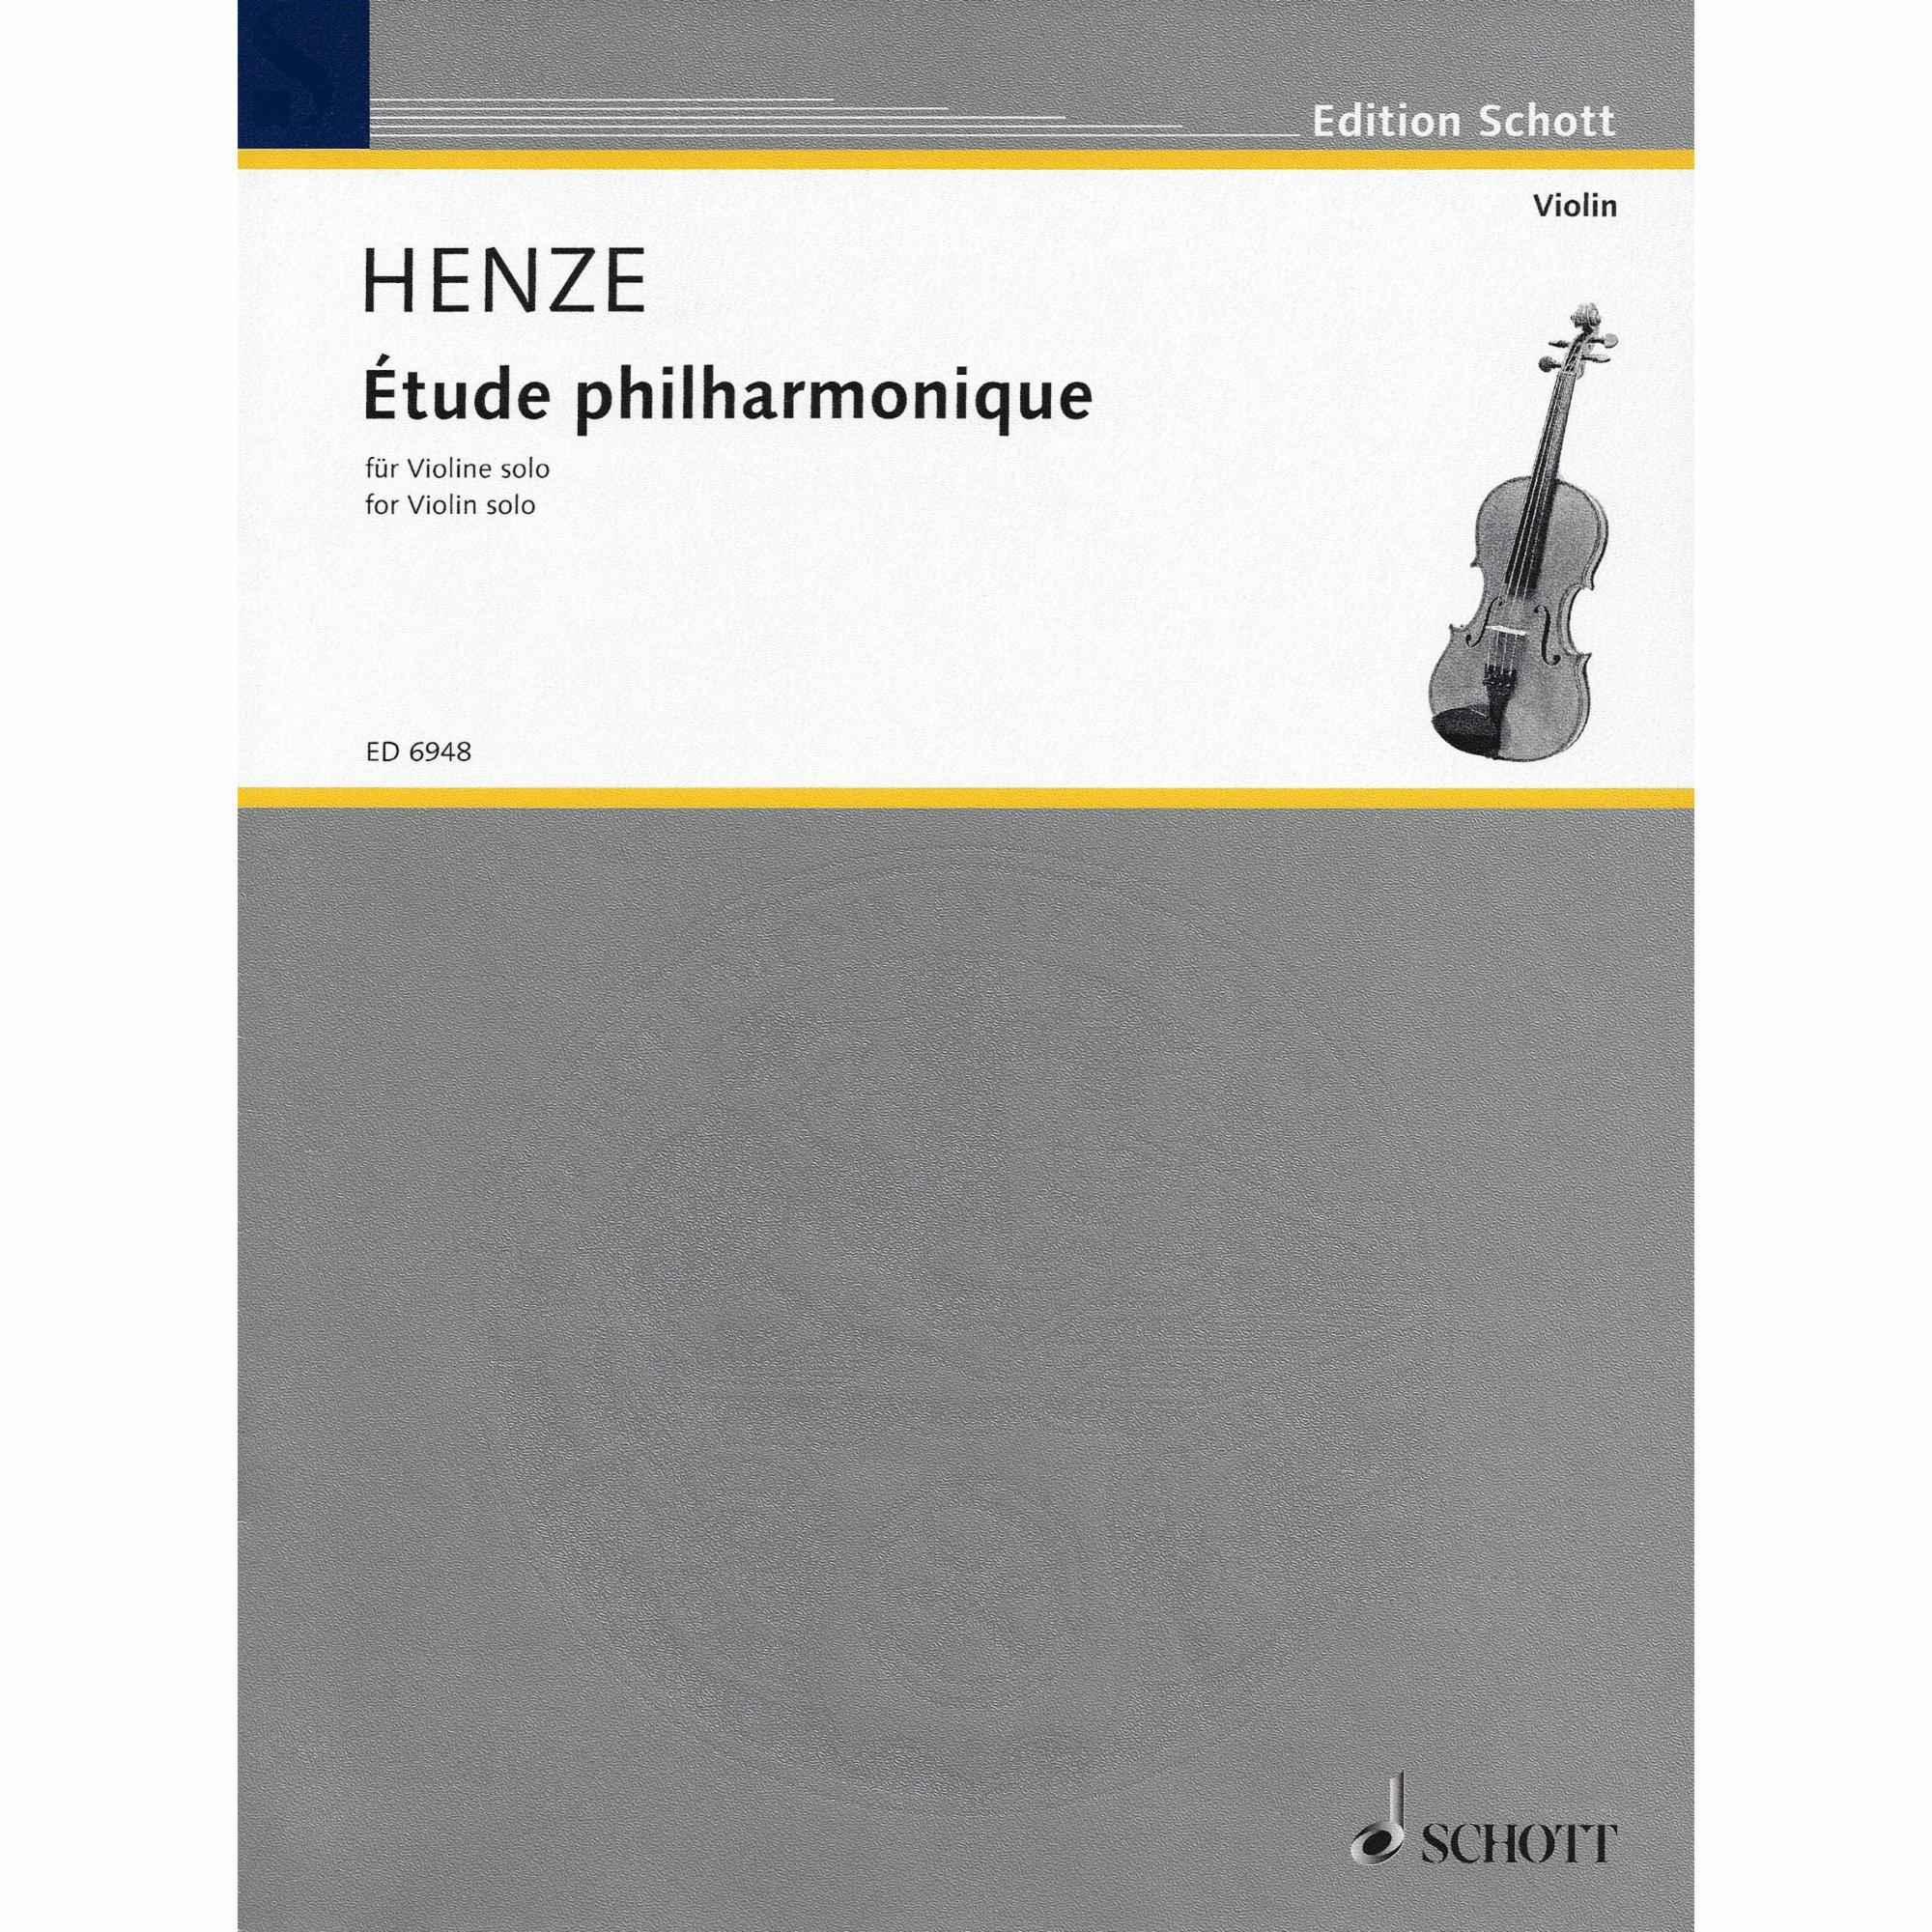 Henze -- Etude philharmonique for Solo Violin